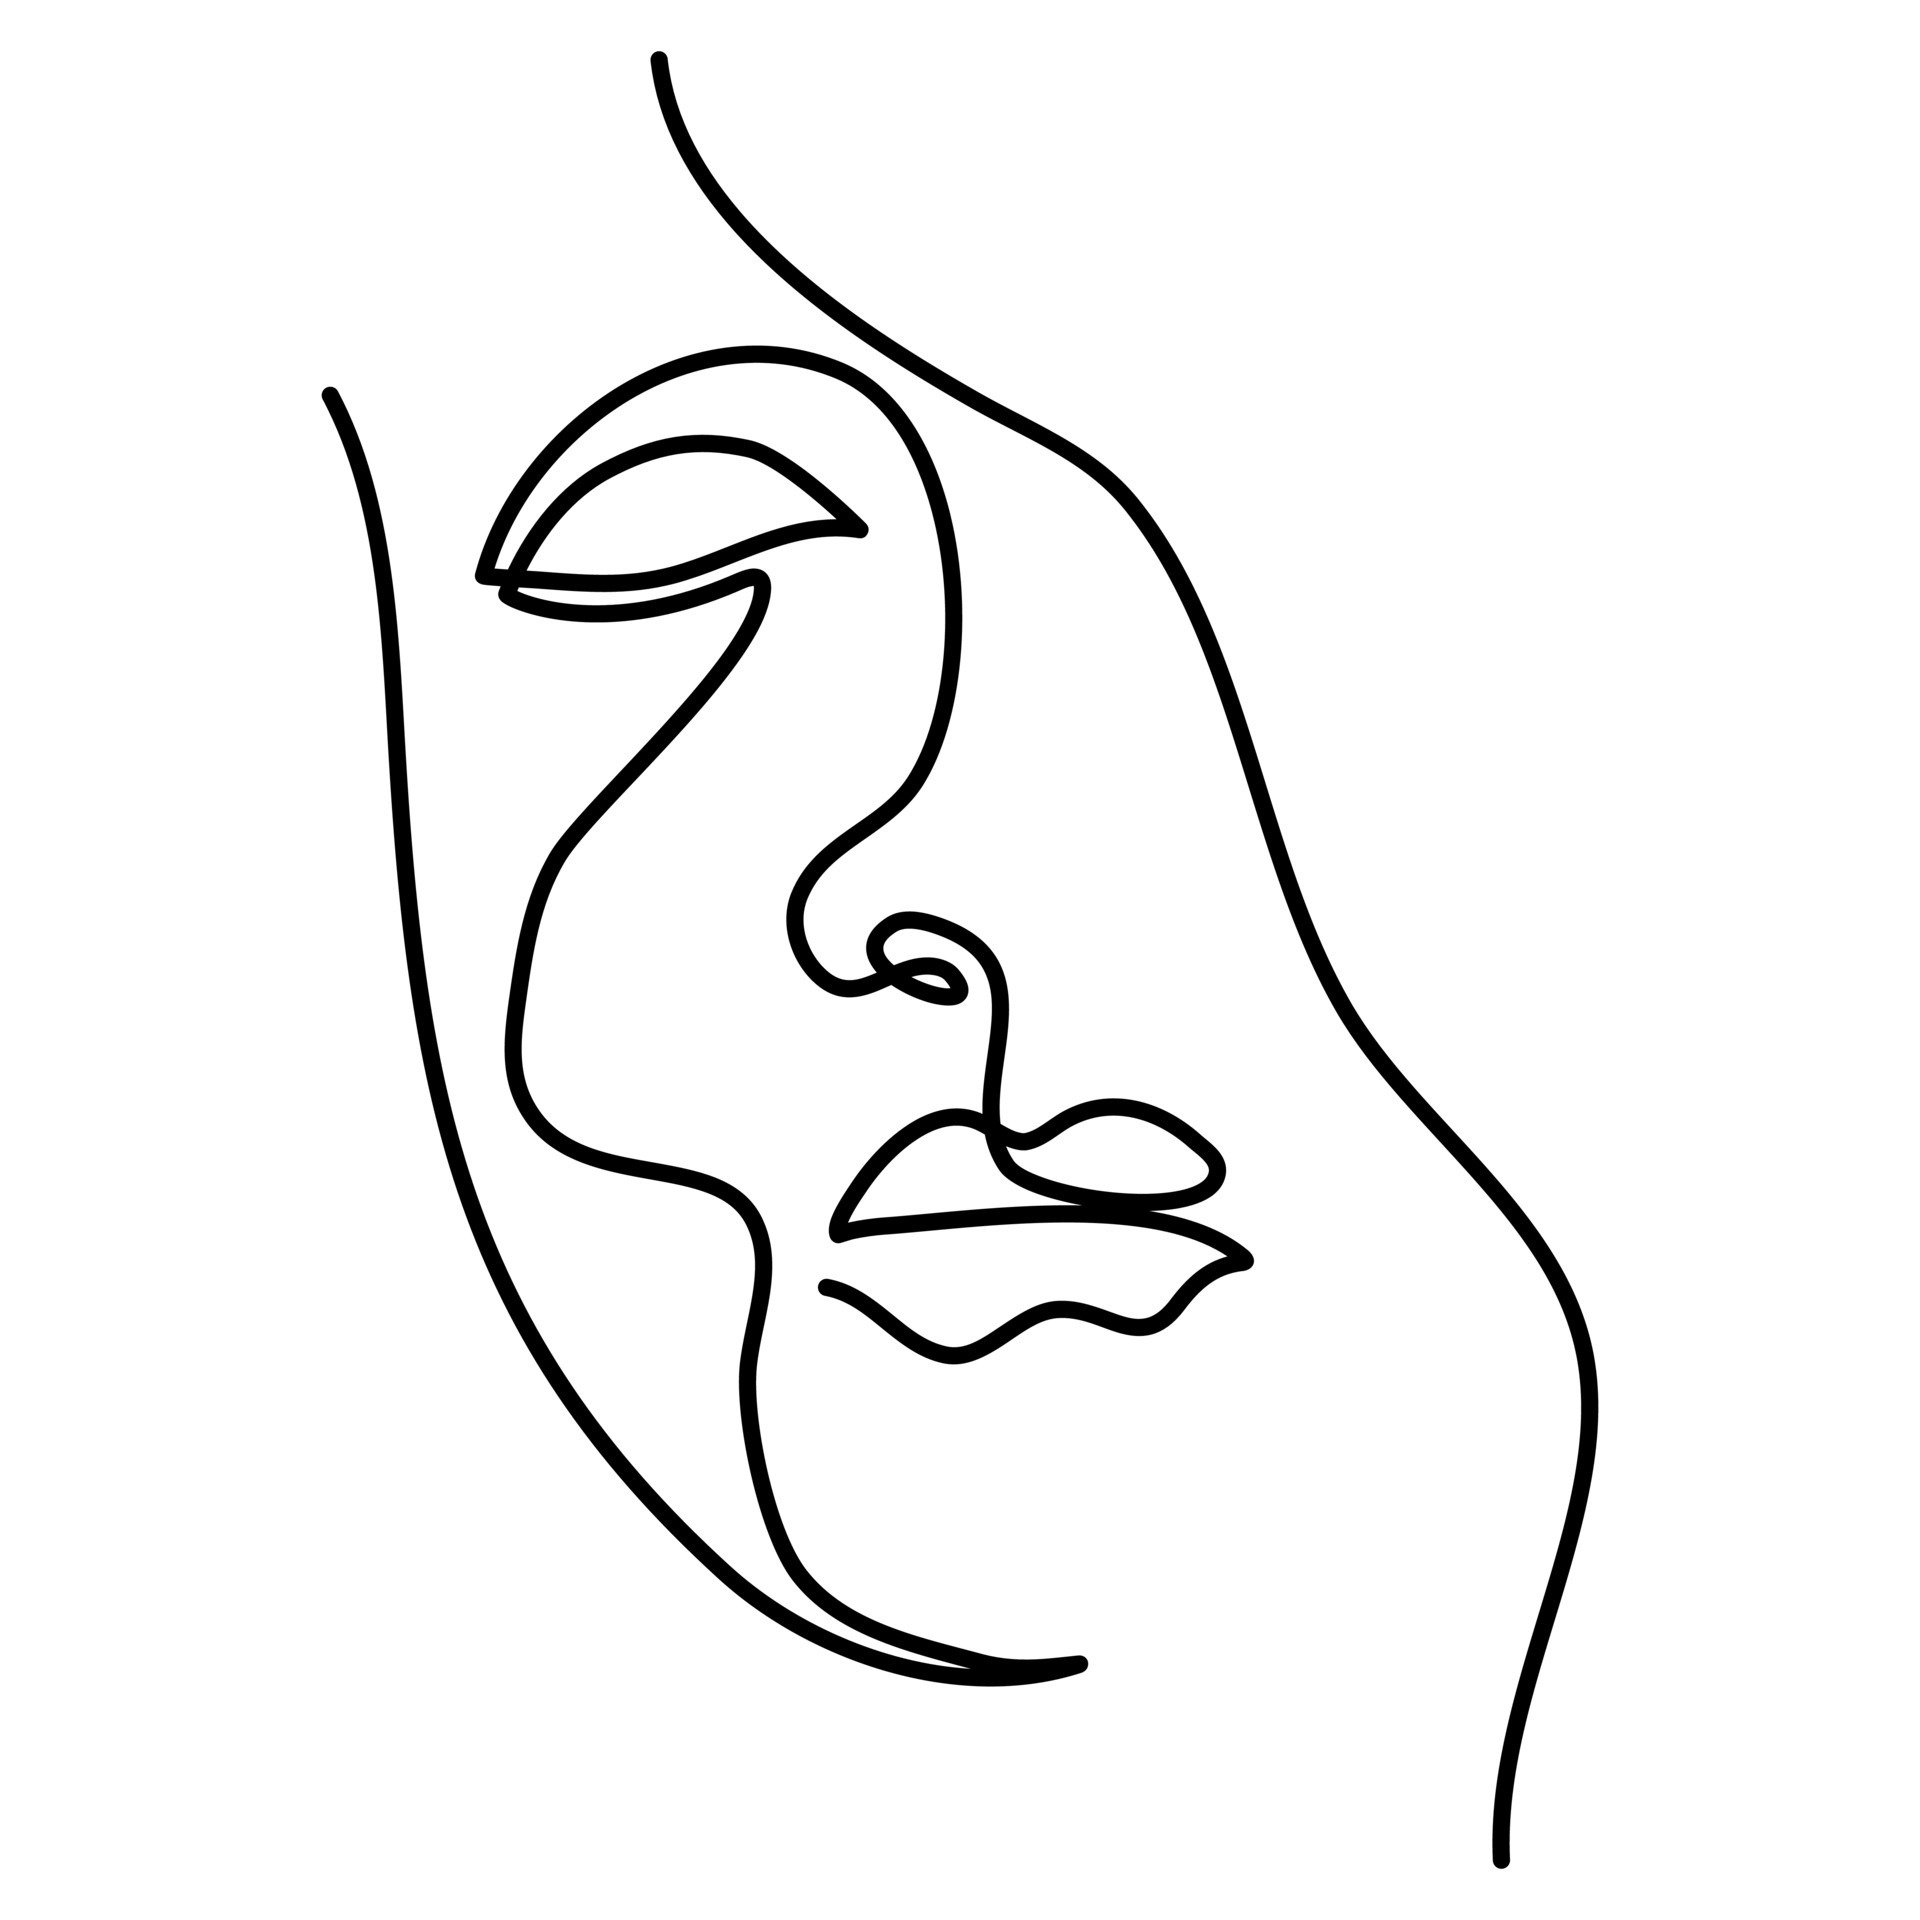 Face outline. Портрет одной линией. Волосы непрерывный рисунок одной линией.